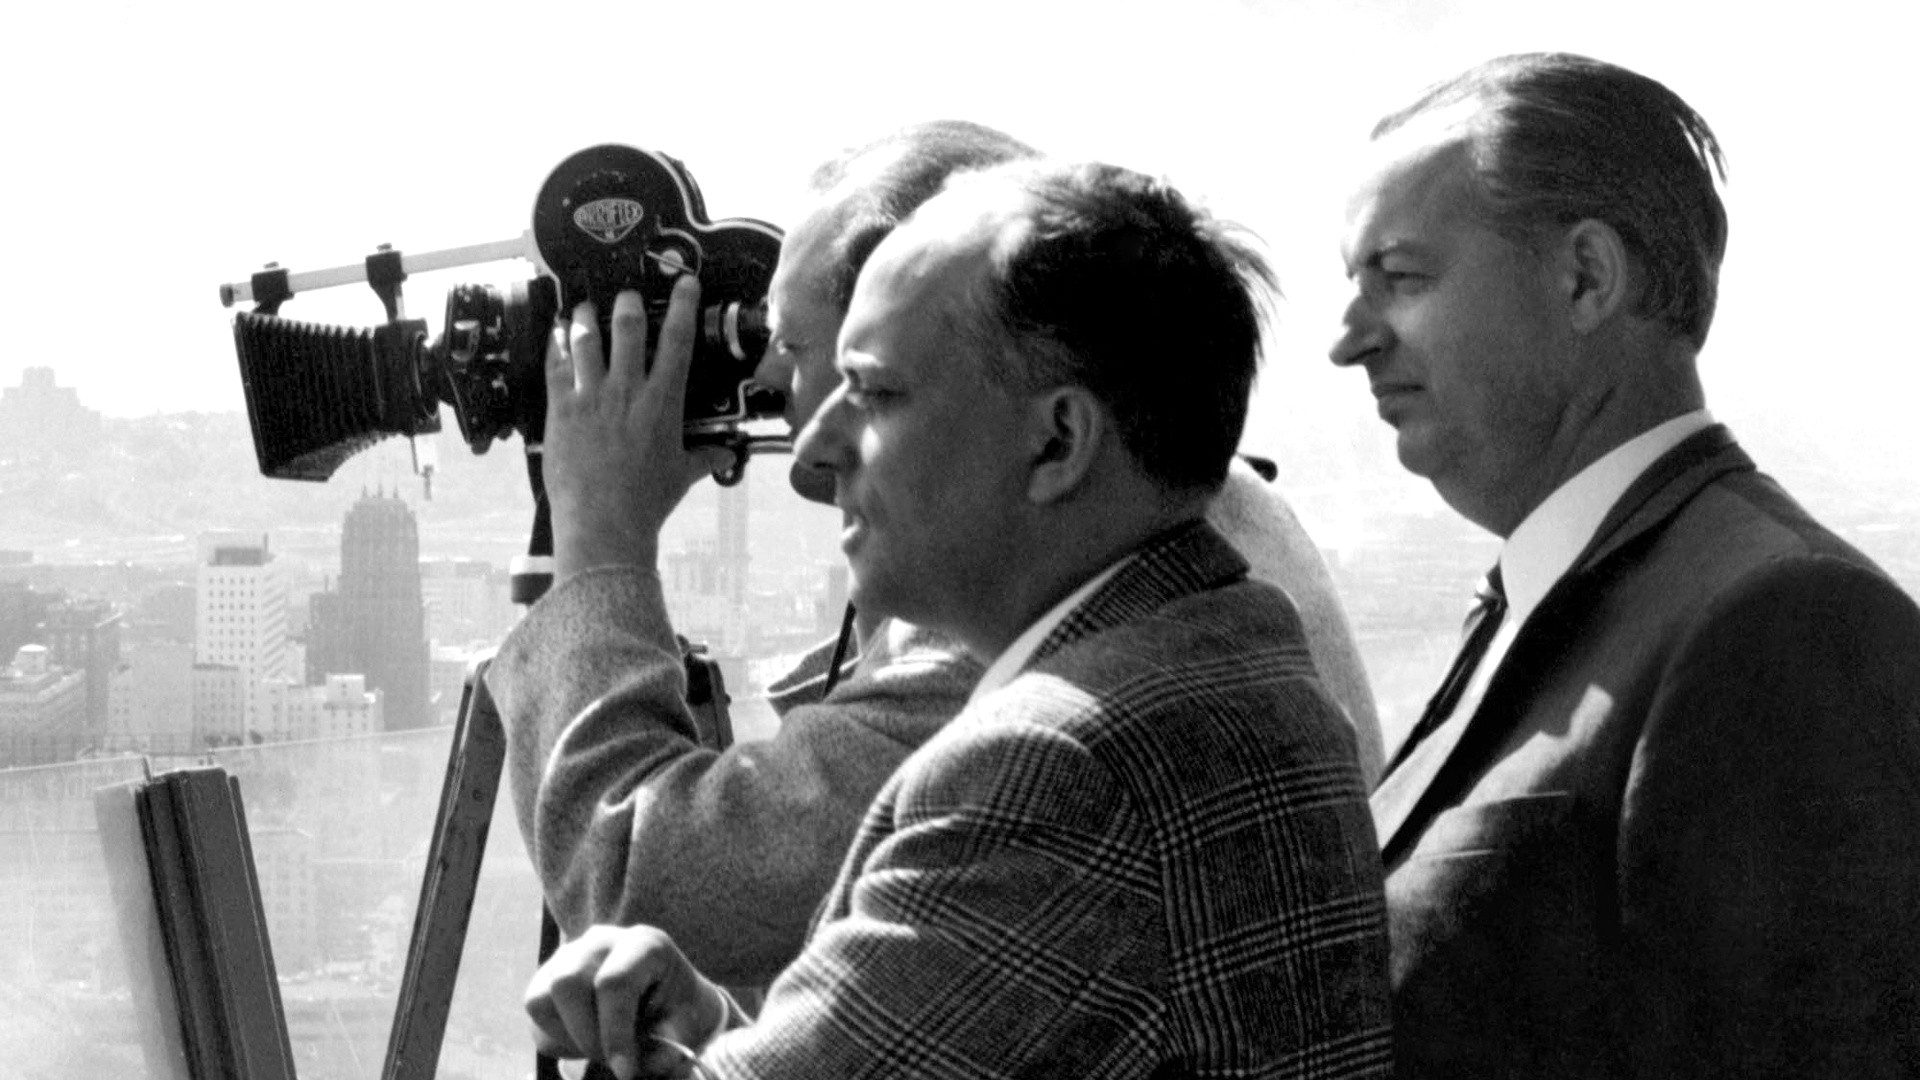 Hoimar von Ditfurth und Günter Siefarth. | Bildquelle: WDR30.03.1967. Hoimar von Ditfurth (1921-1989)  und Günter Siefarth (l) .
Bild: Hoimar von Ditfurth und Günter Siefarth, Profil, Mann mit Kamera filmend